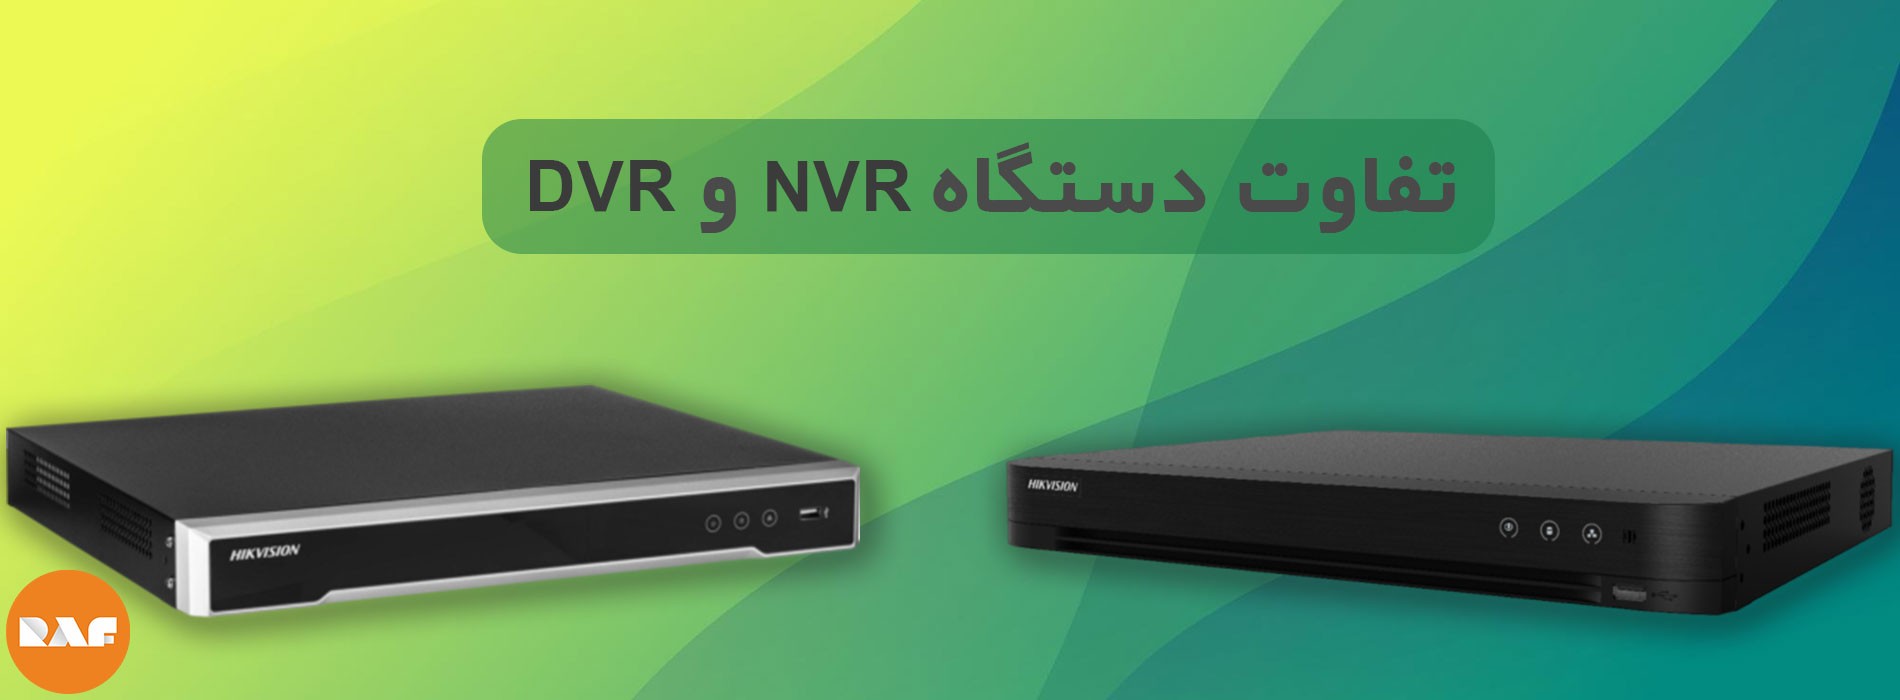  دستگاه DVR و NVR چه تفاوتی باهم دارند؟